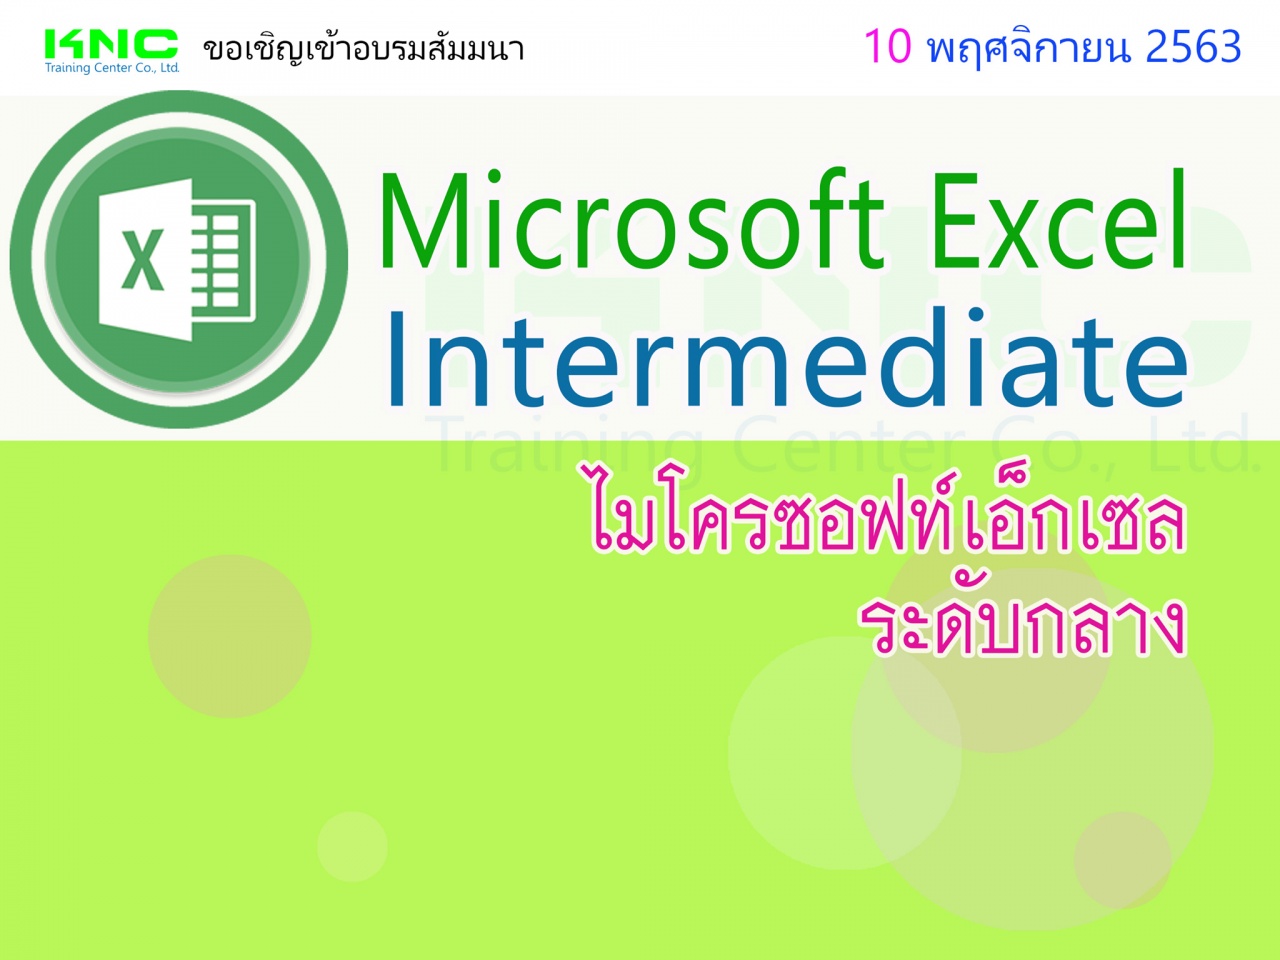 Microsoft Excel Intermediate (ไมโครซอฟท์เอ็กเซลระดับกลาง)